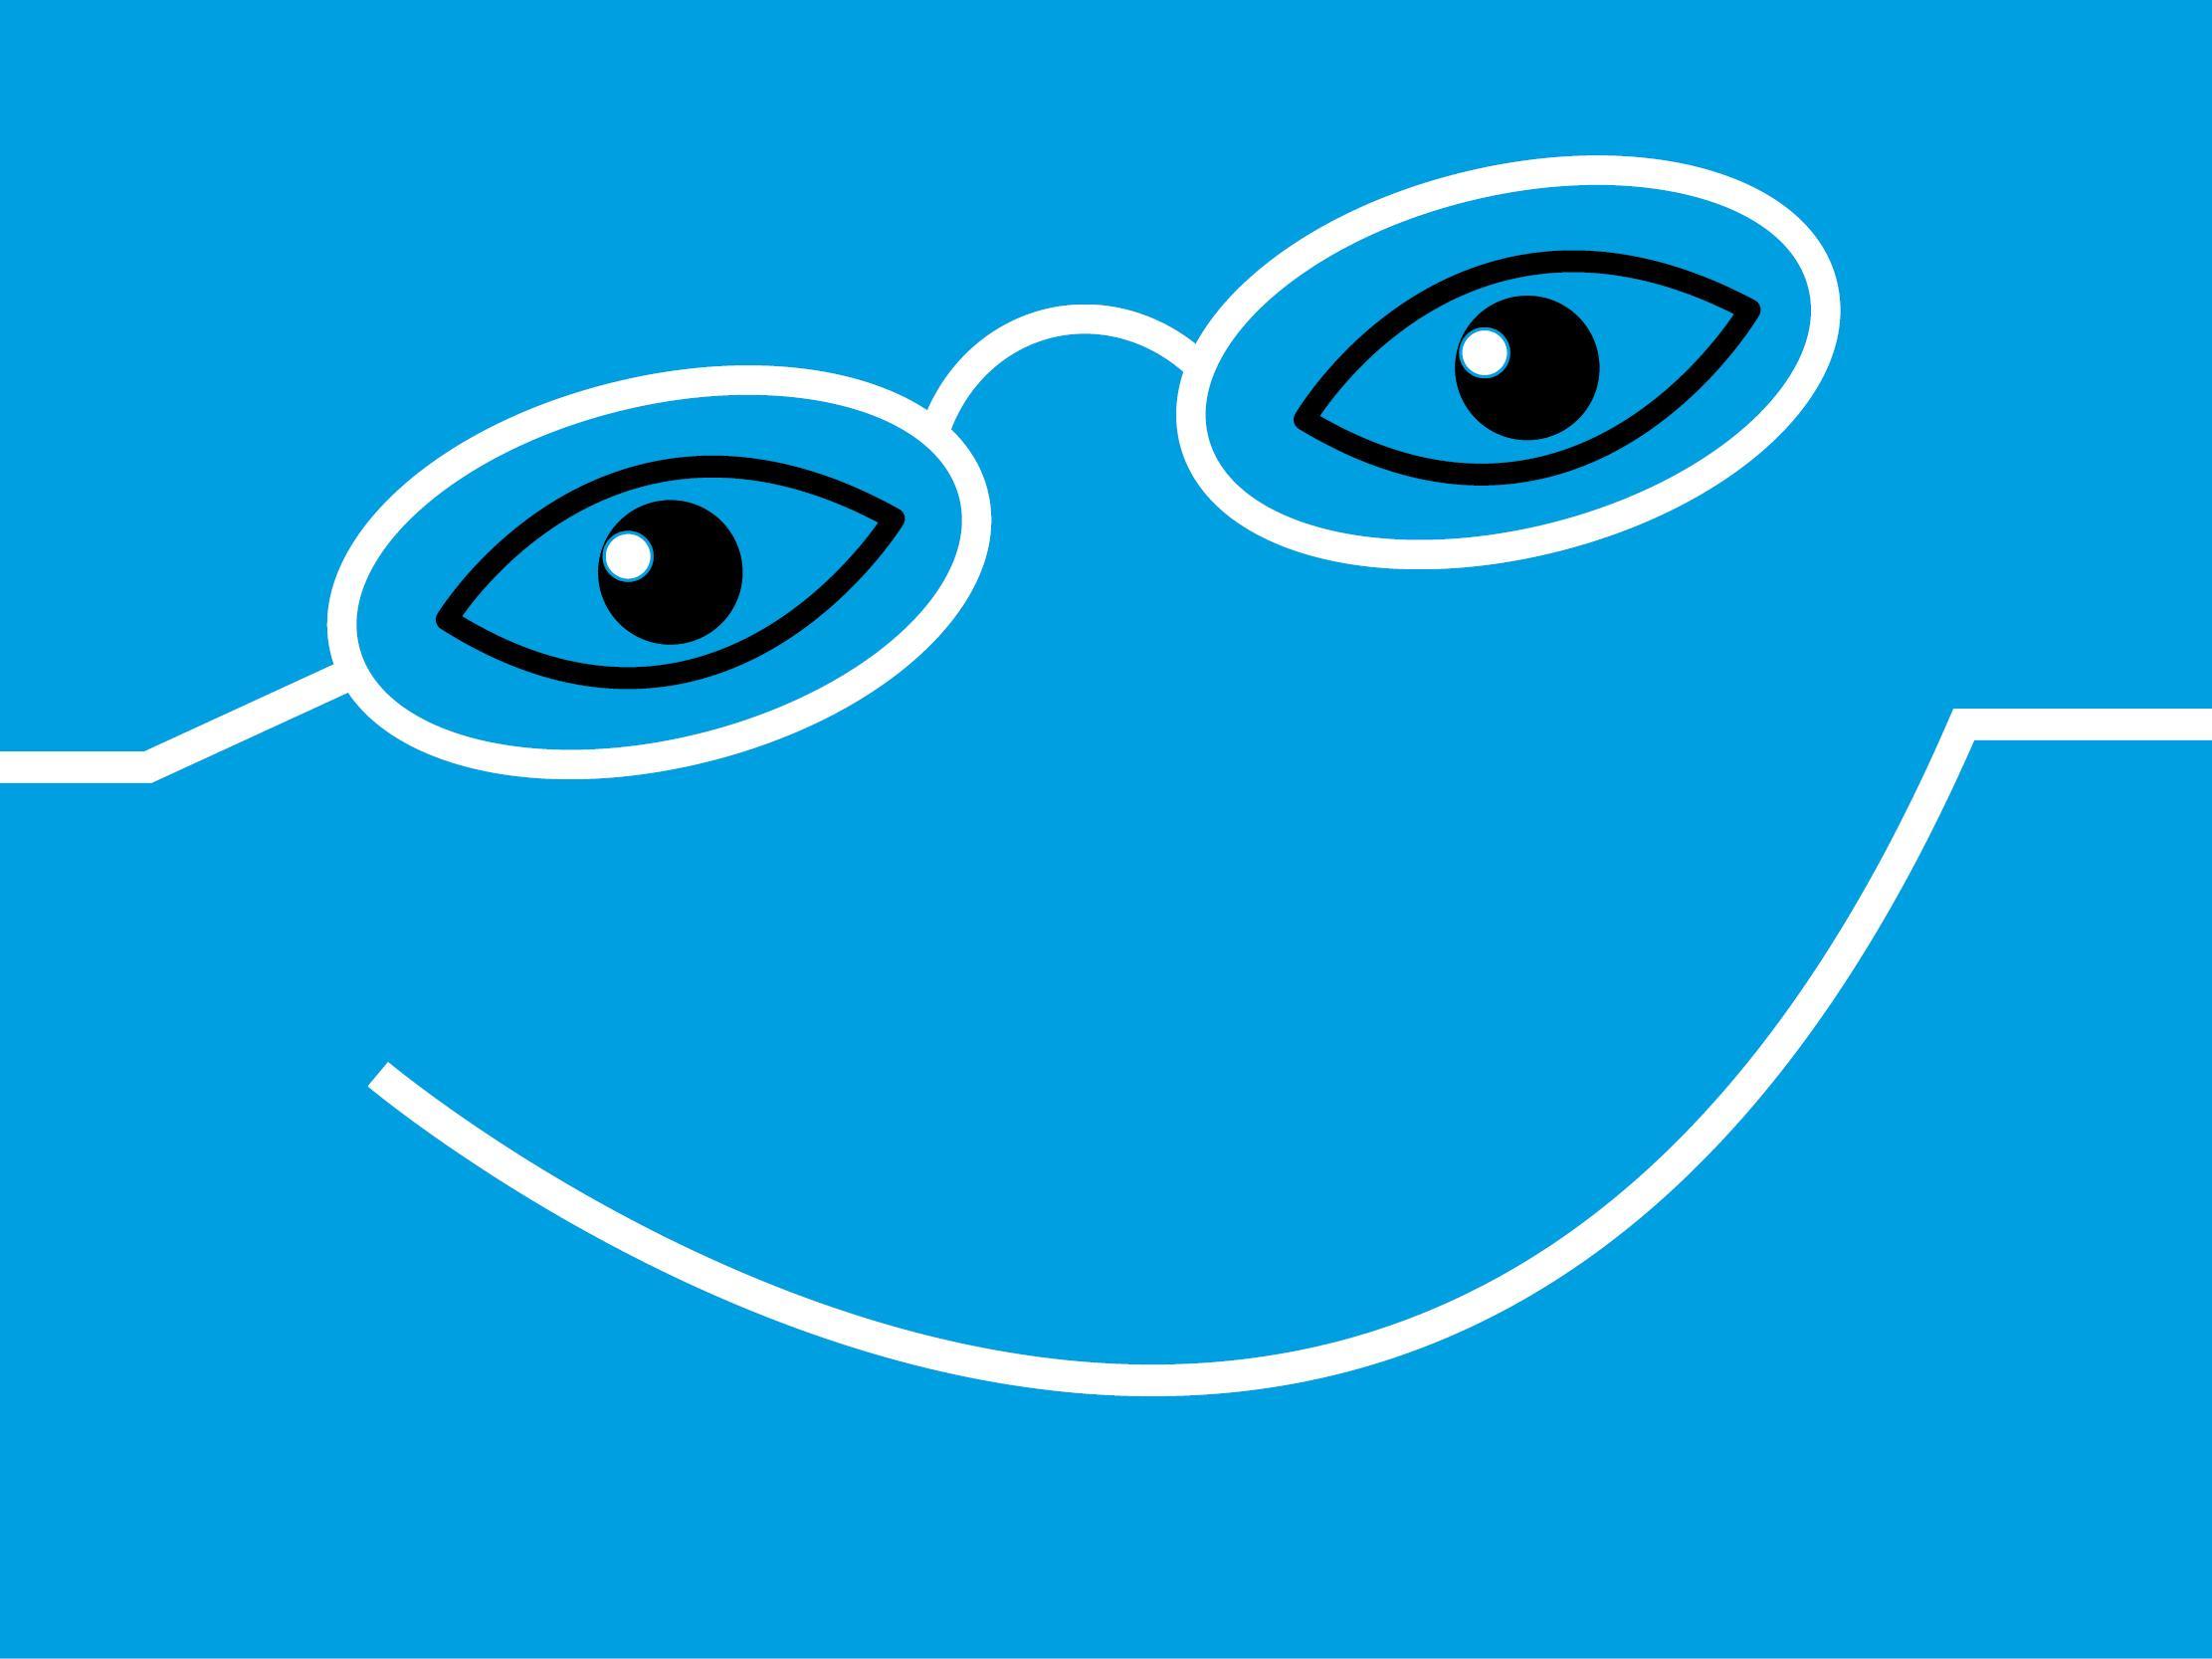 Grafik: blauer Hintergrund, Strichgrafik lachendes Gesicht mit EinDollarBrile